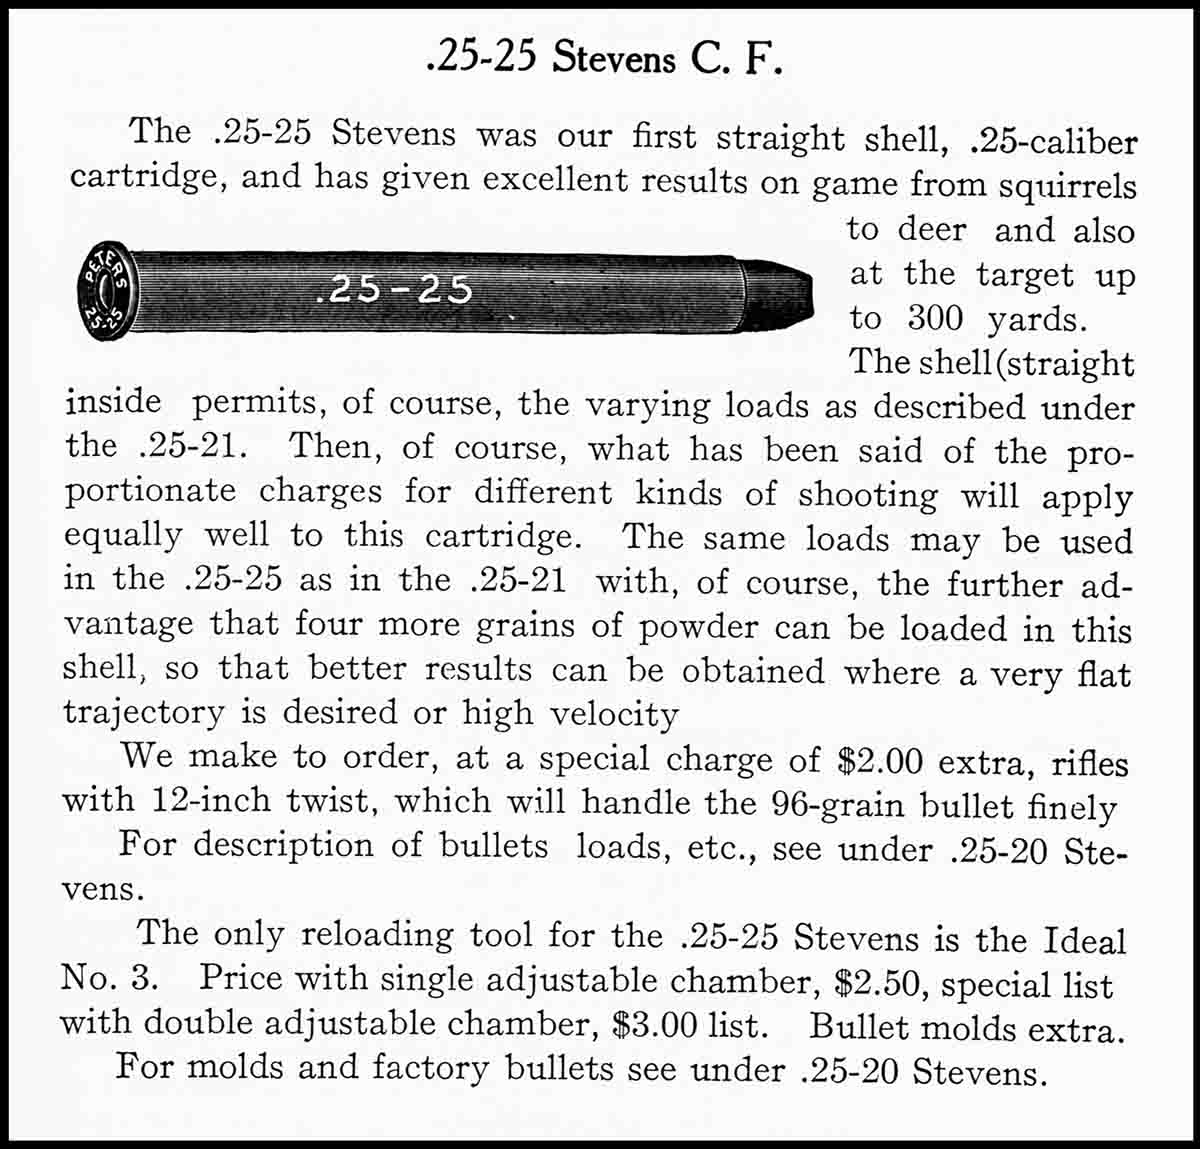 The .25-25 Stevens Straight cartridge from the Stevens catalog 52.